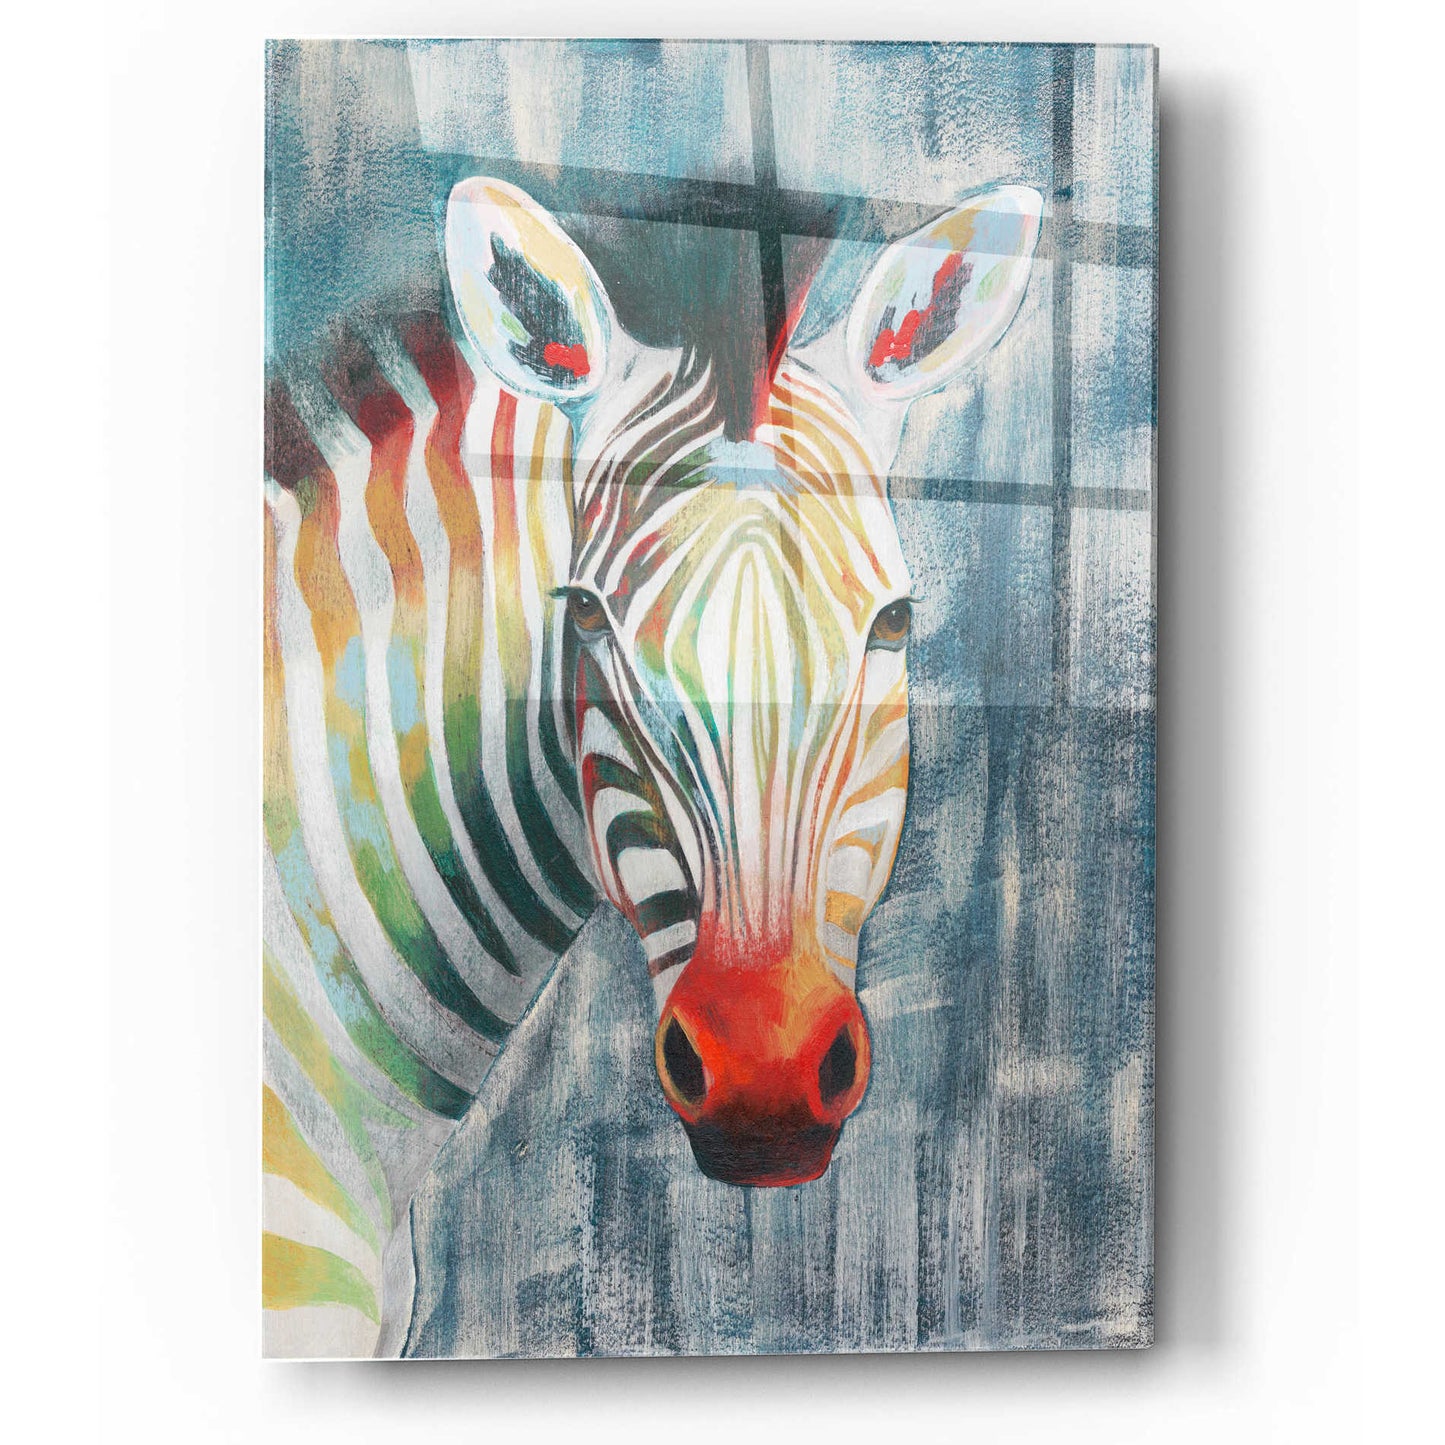 Epic Art 'Prism Zebra I' by Grace Popp, Acrylic Wall Glass,12x16